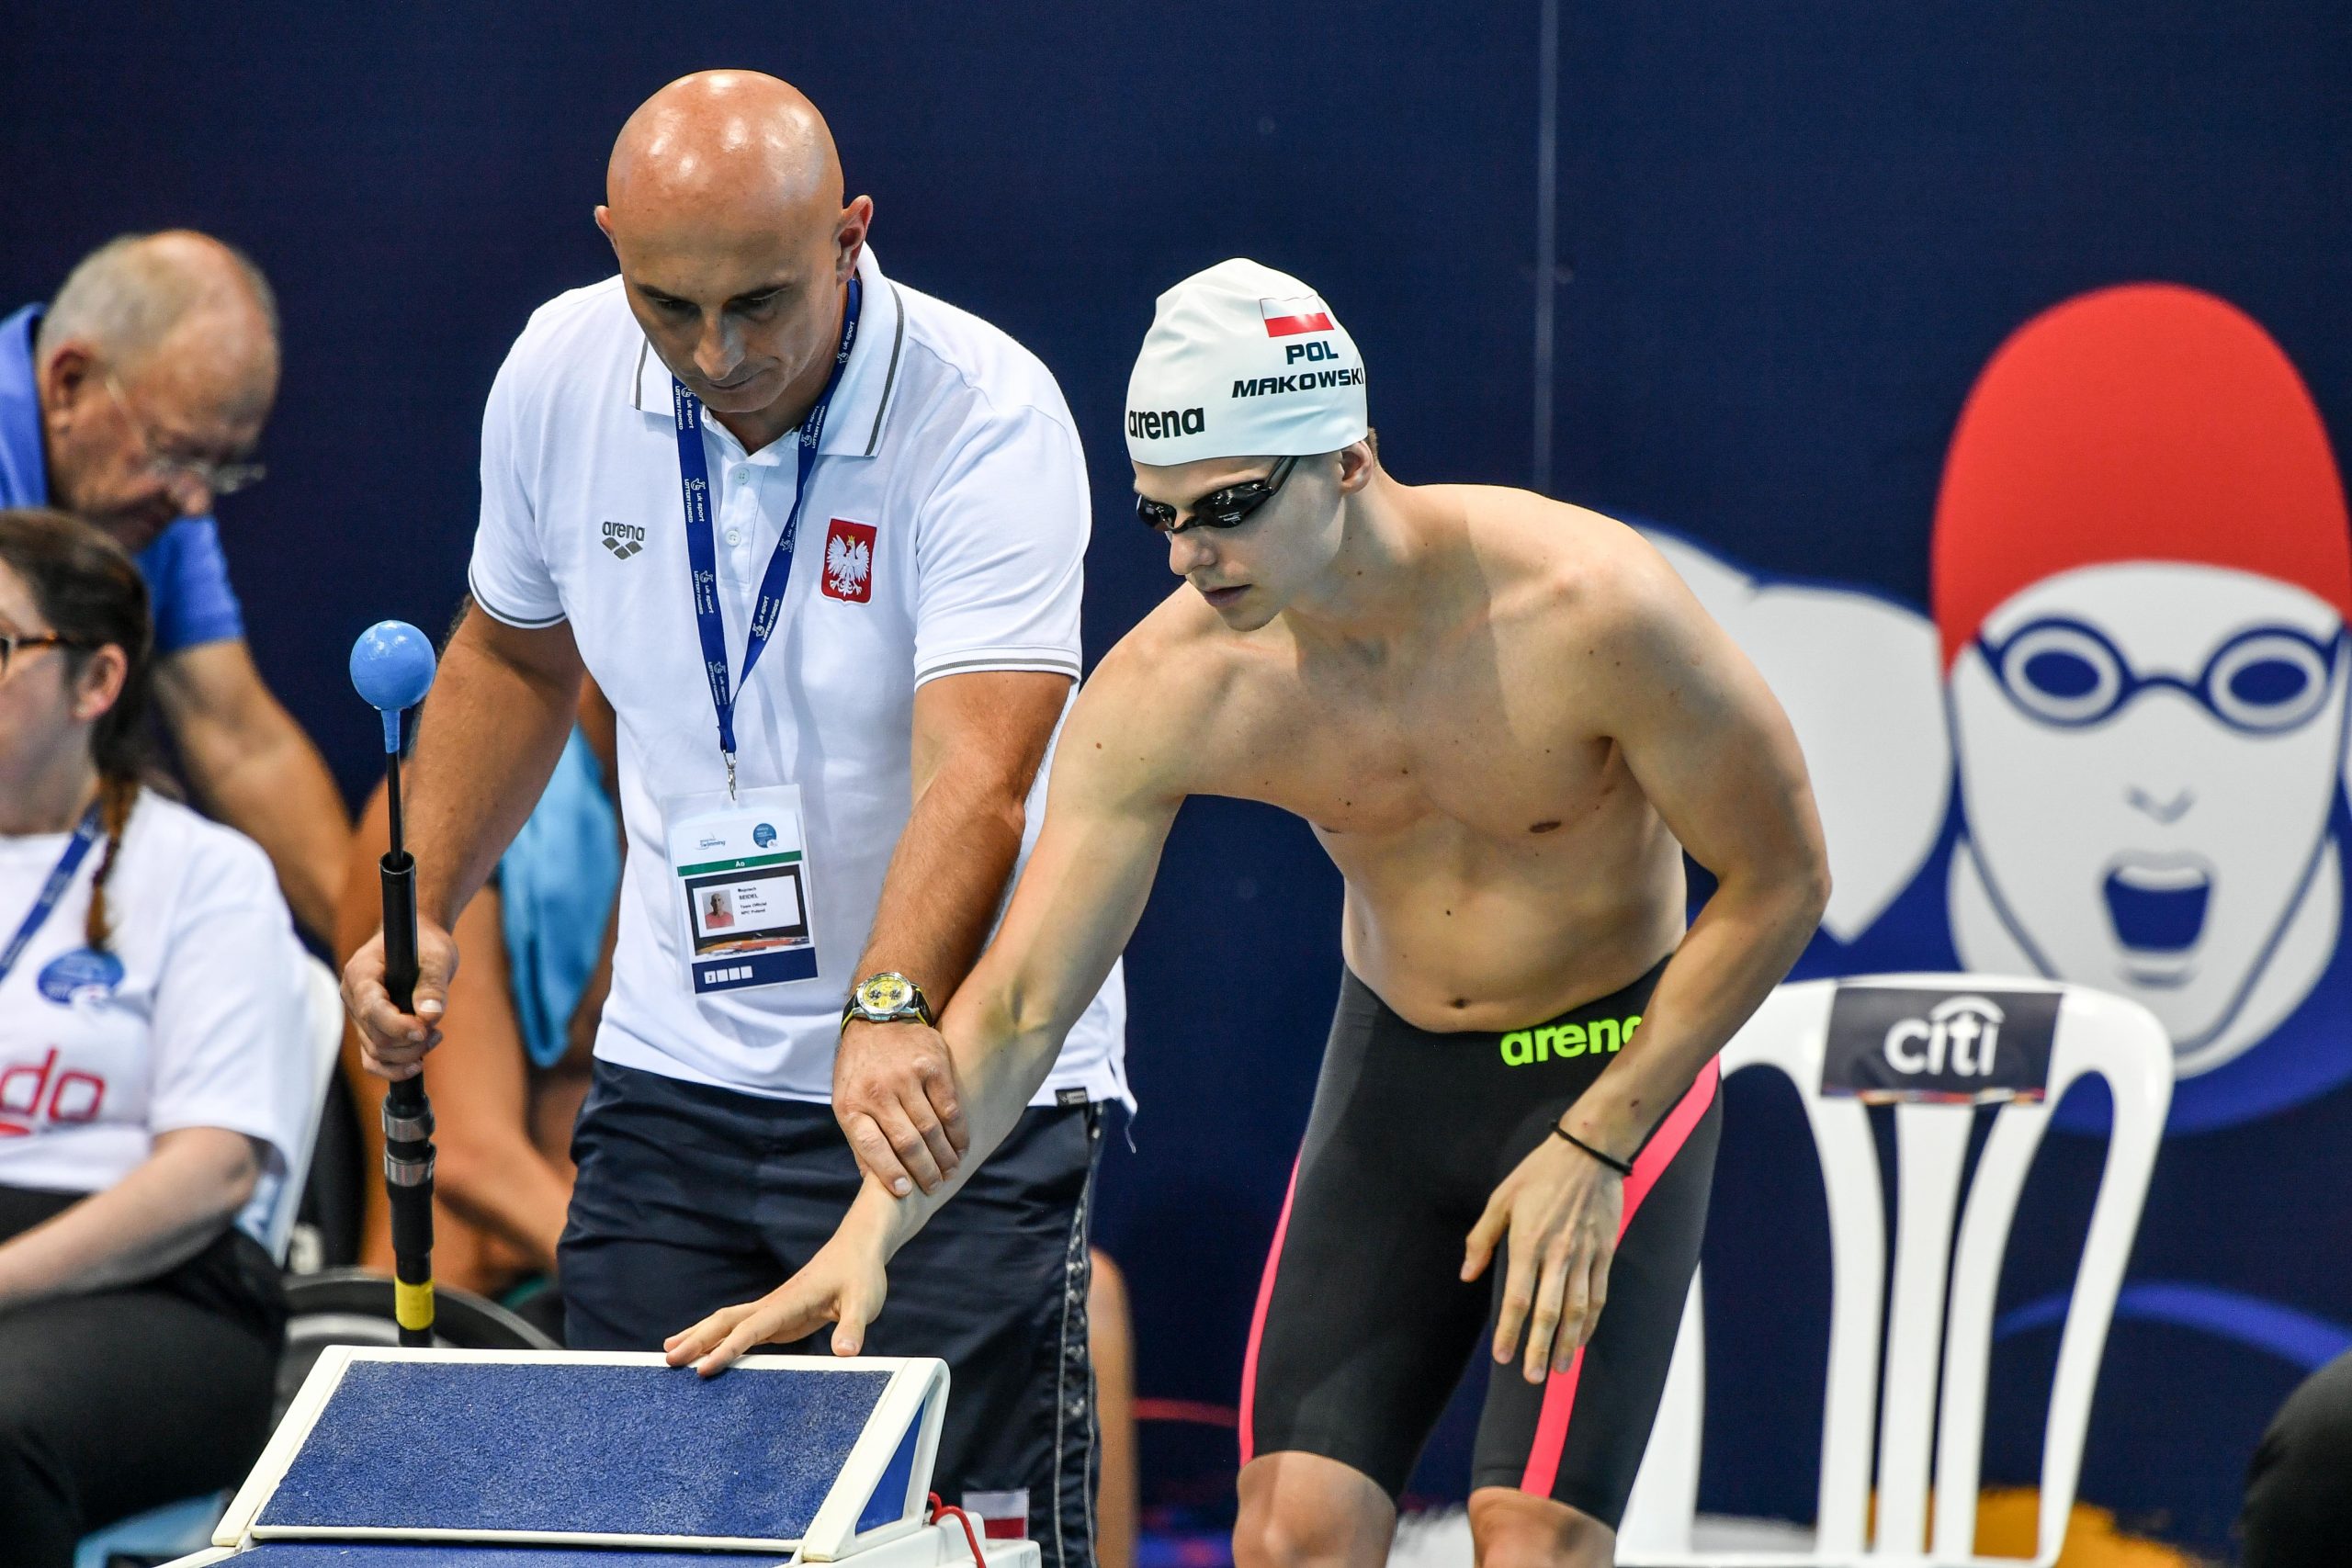 Na zdjęciu trener pomaga pływakowi (Makowski) wyczuć dłonią brzeg basenu.